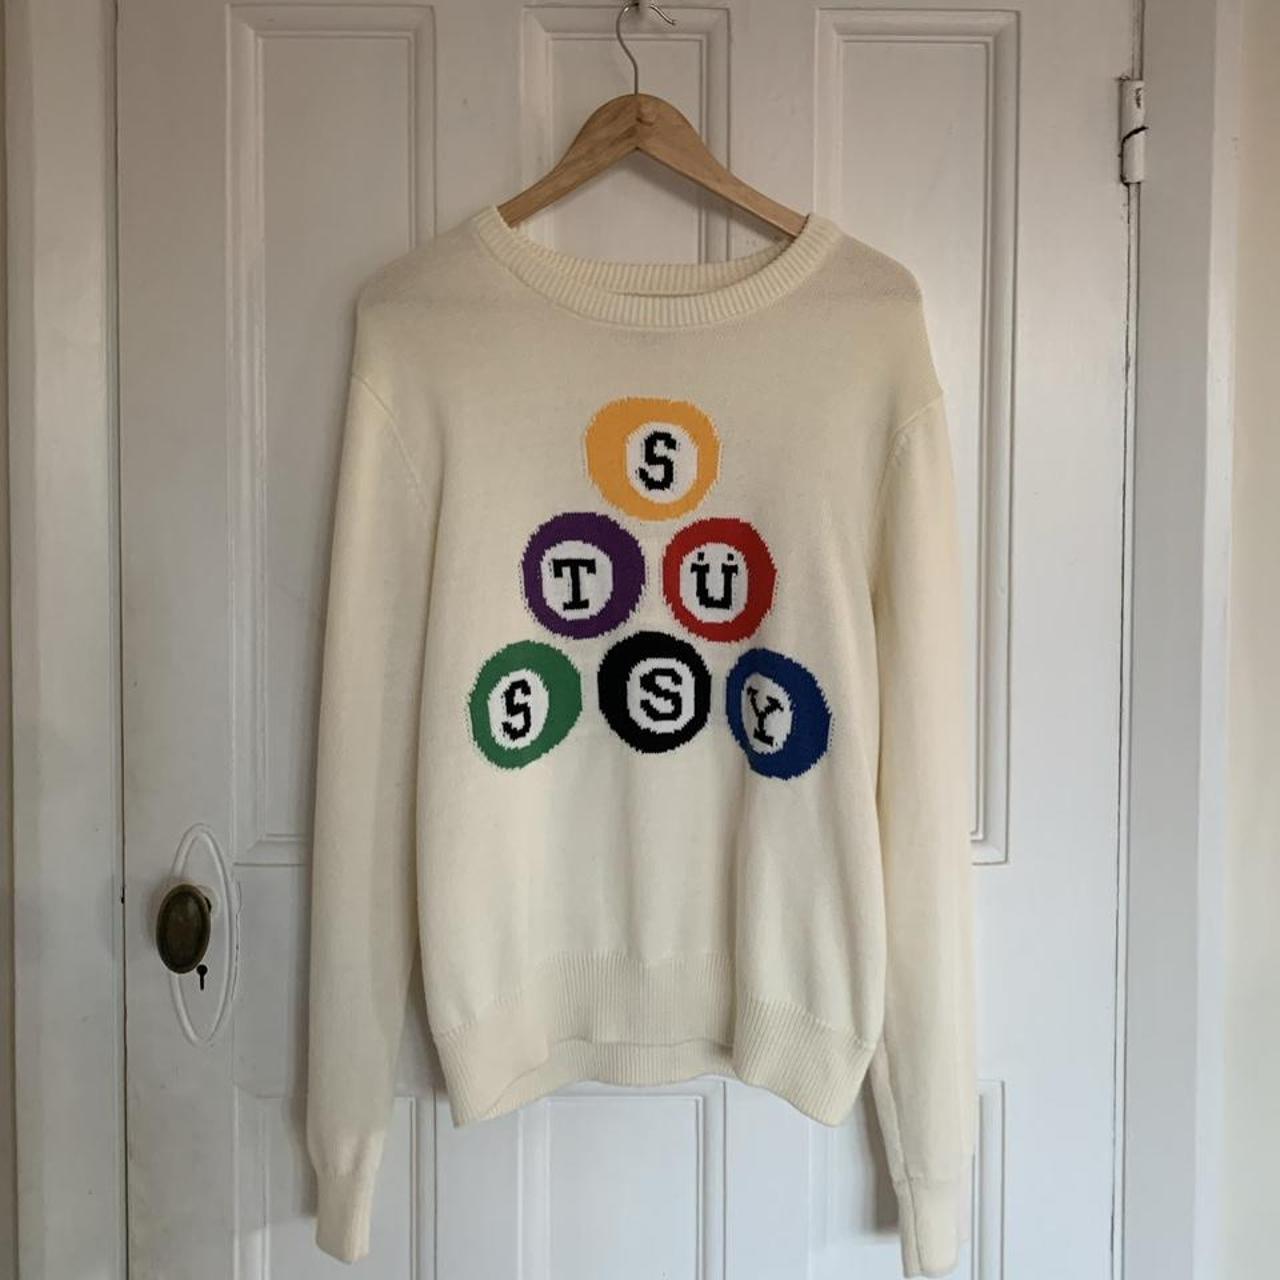 Stussy billiards knit jumper sweatshirt , Size medium...